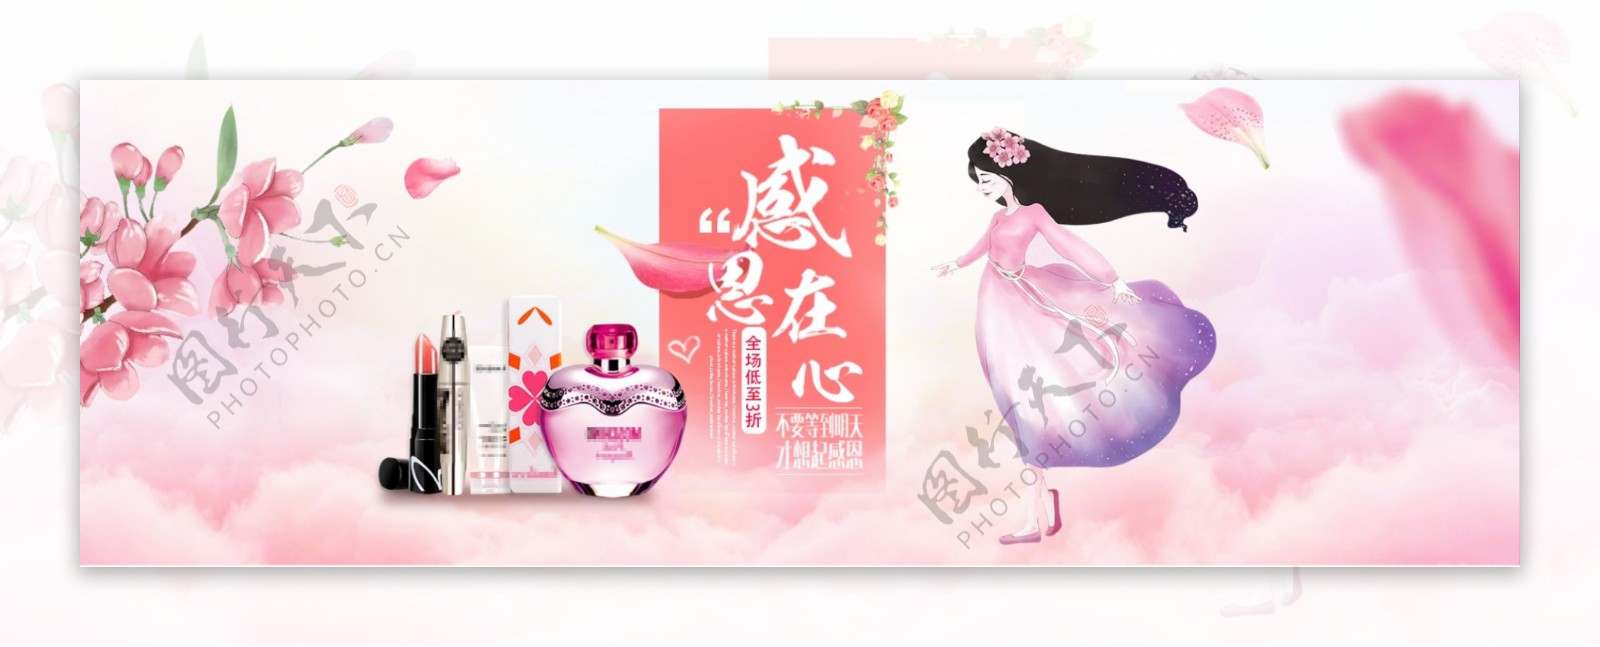 粉色梦幻背景感恩节化妆品促销电商海报